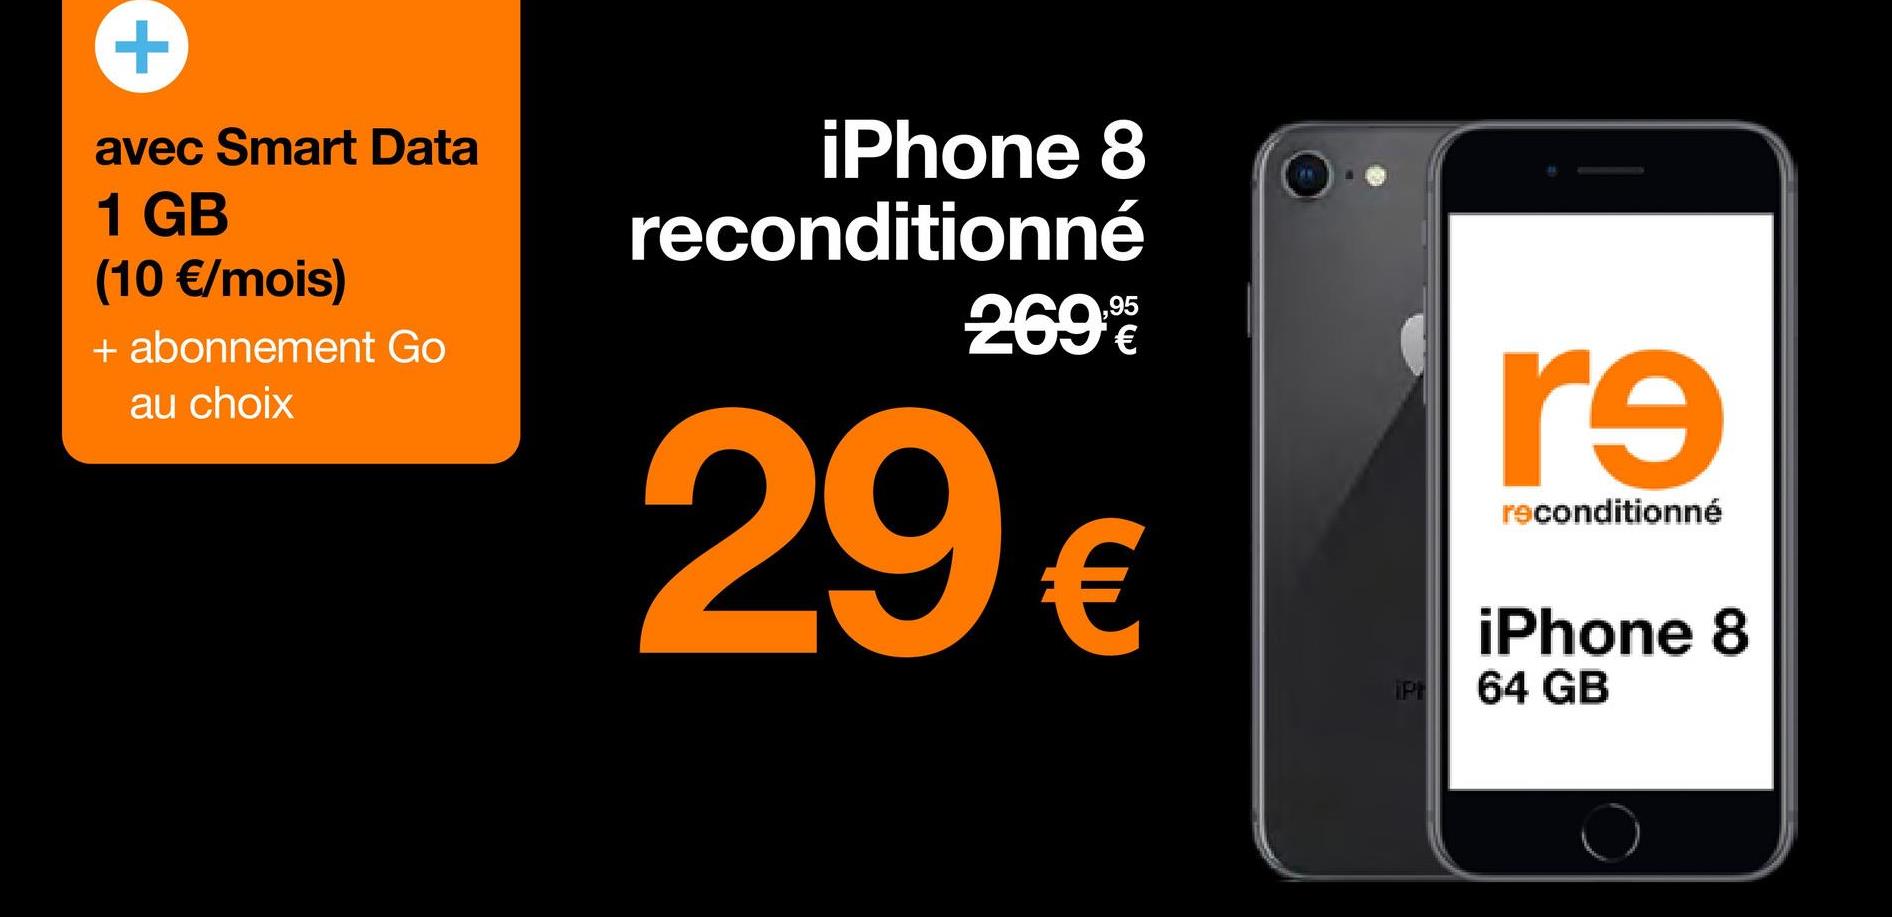 avec Smart Data
1 GB
(10 €/mois)
+ abonnement Go
au choix
iPhone 8
reconditionné
2699€€
29 €
IPH
re
reconditionné
iPhone 8
64 GB